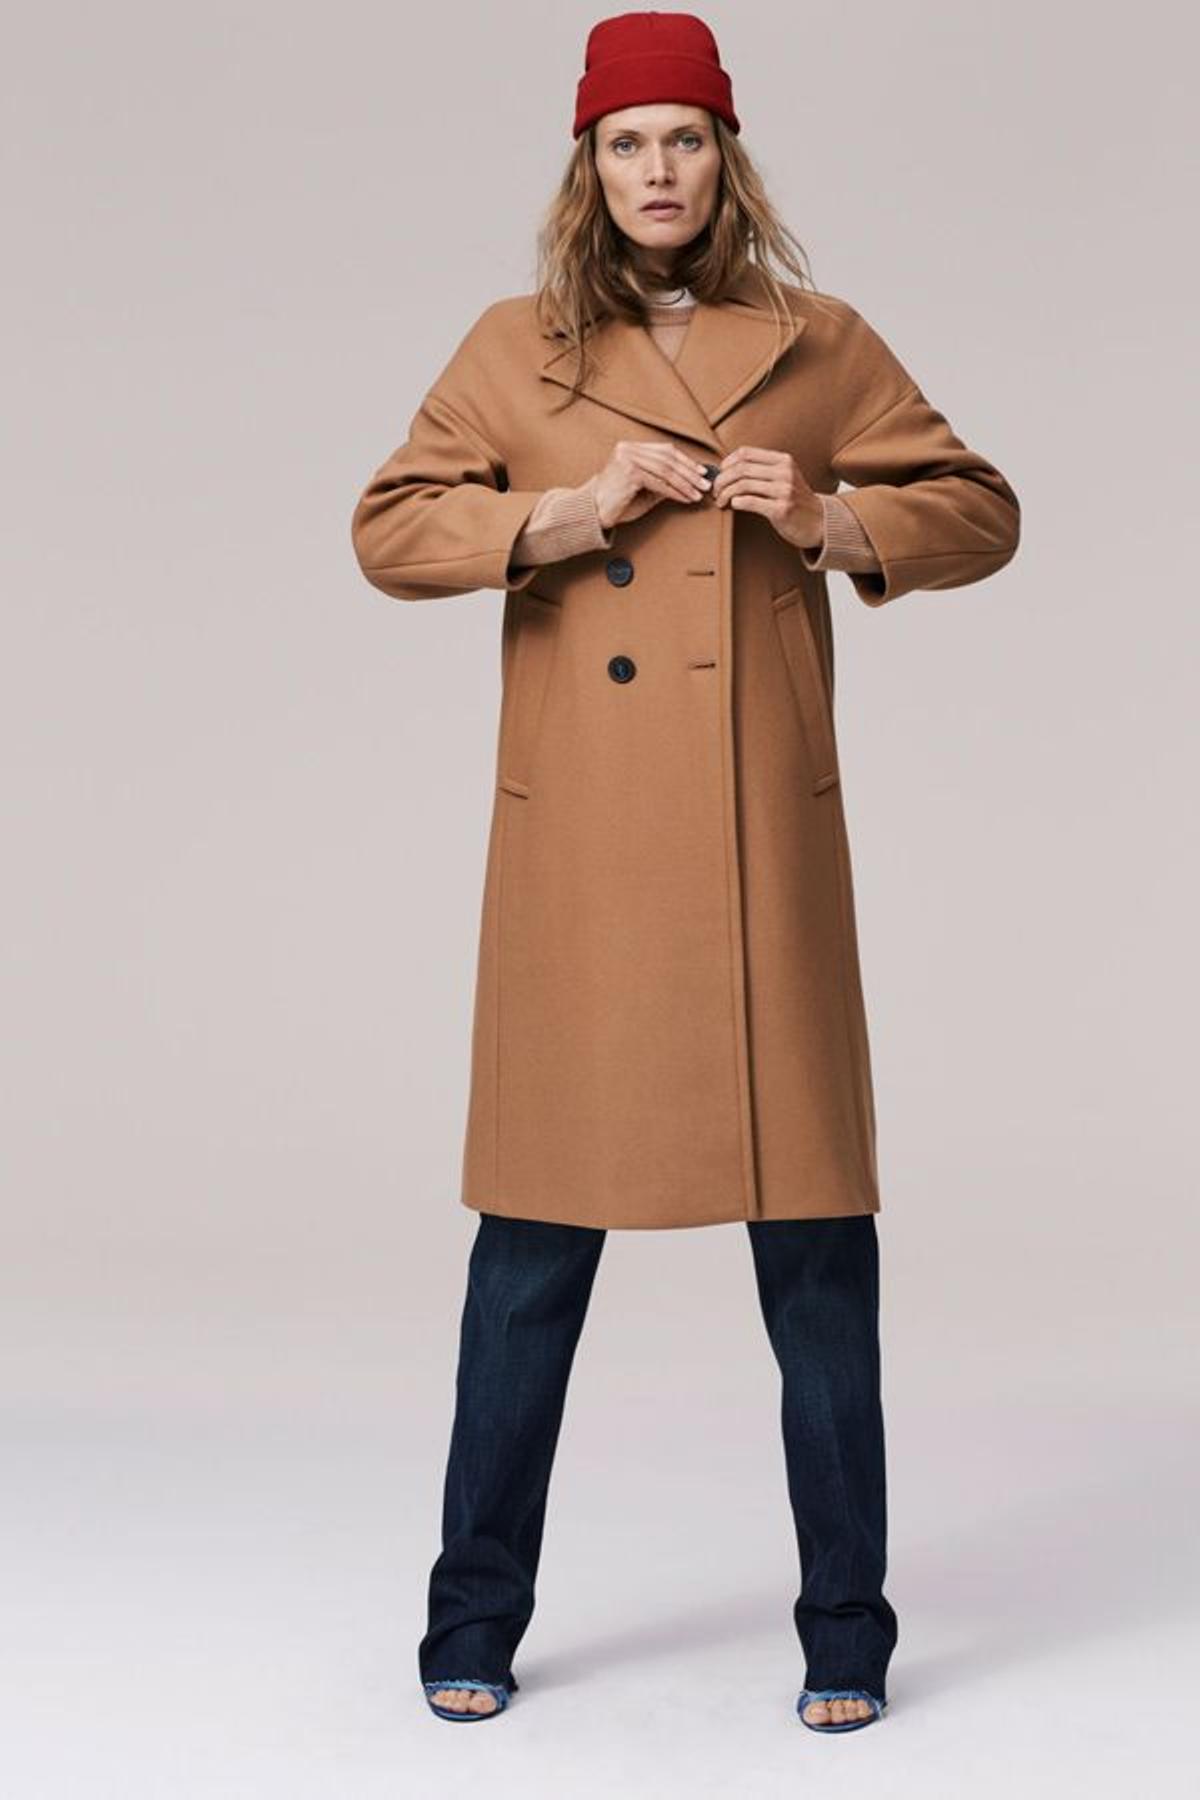 Campaña timeless de Zara: modelo con abrigo camel